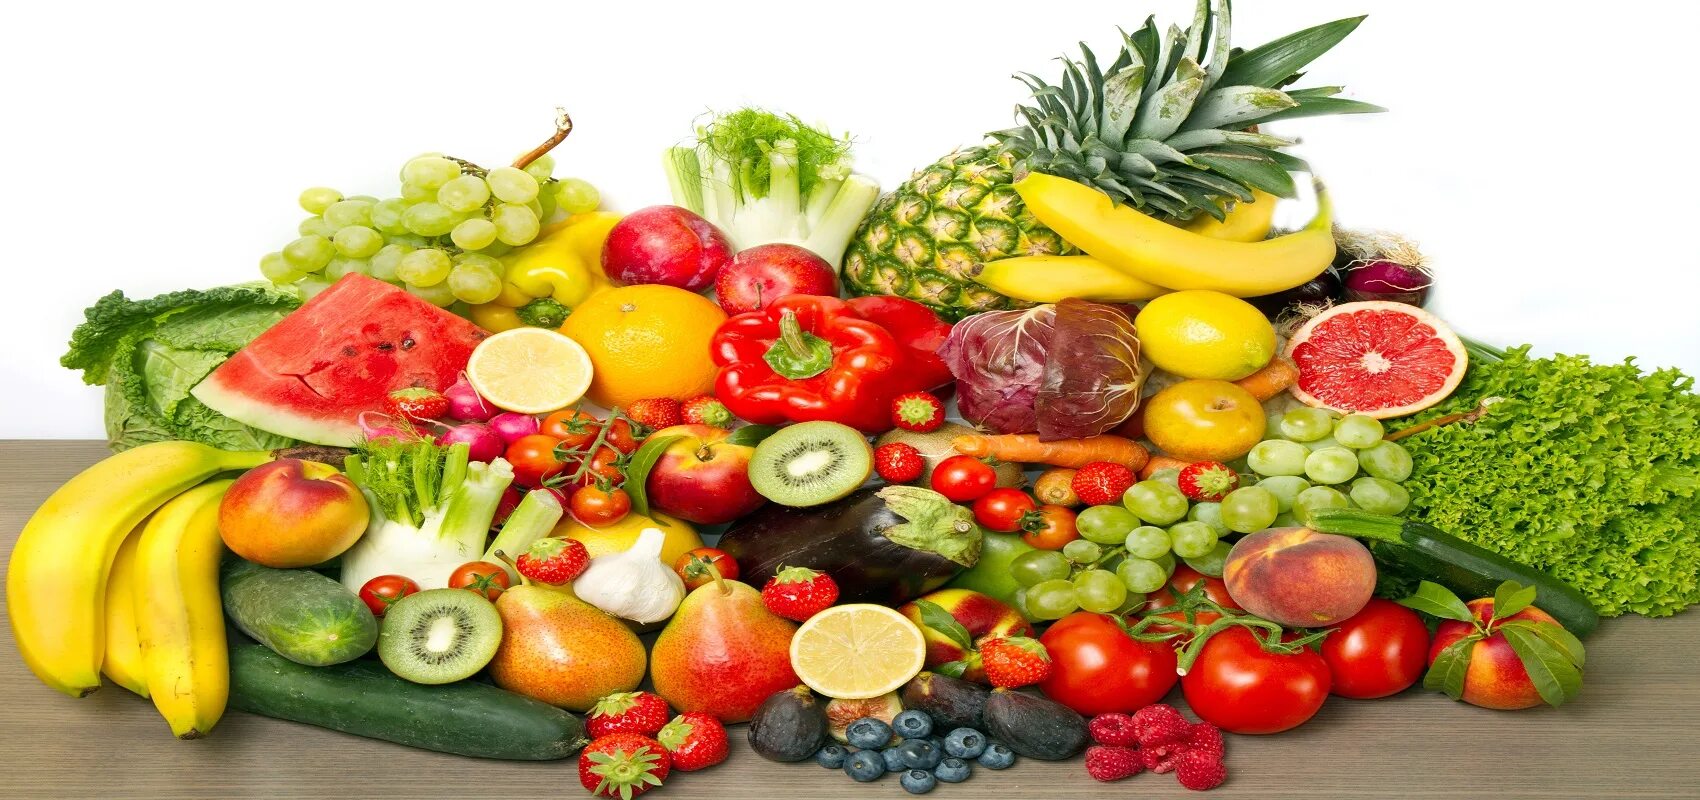 C y et. Овощи и фрукты. Фрукты. Овощи, фрукты, ягоды. Овощи и фрукты на белом фоне.